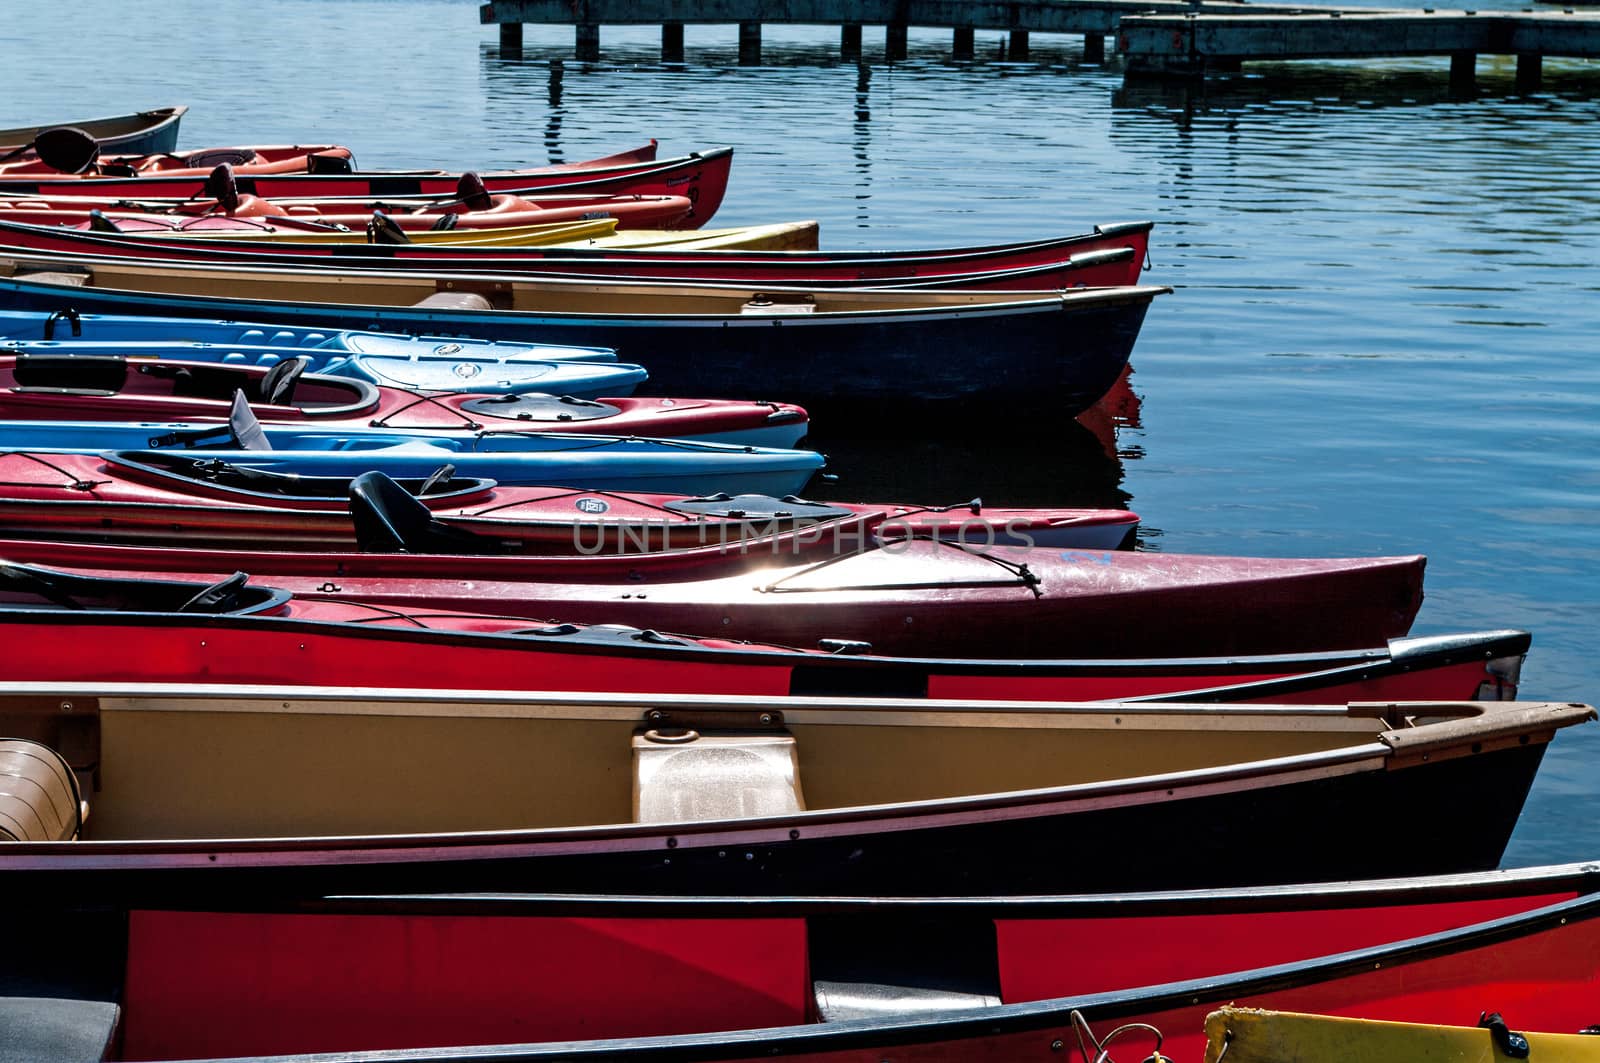 Canoes at Dows Lake by edcorey